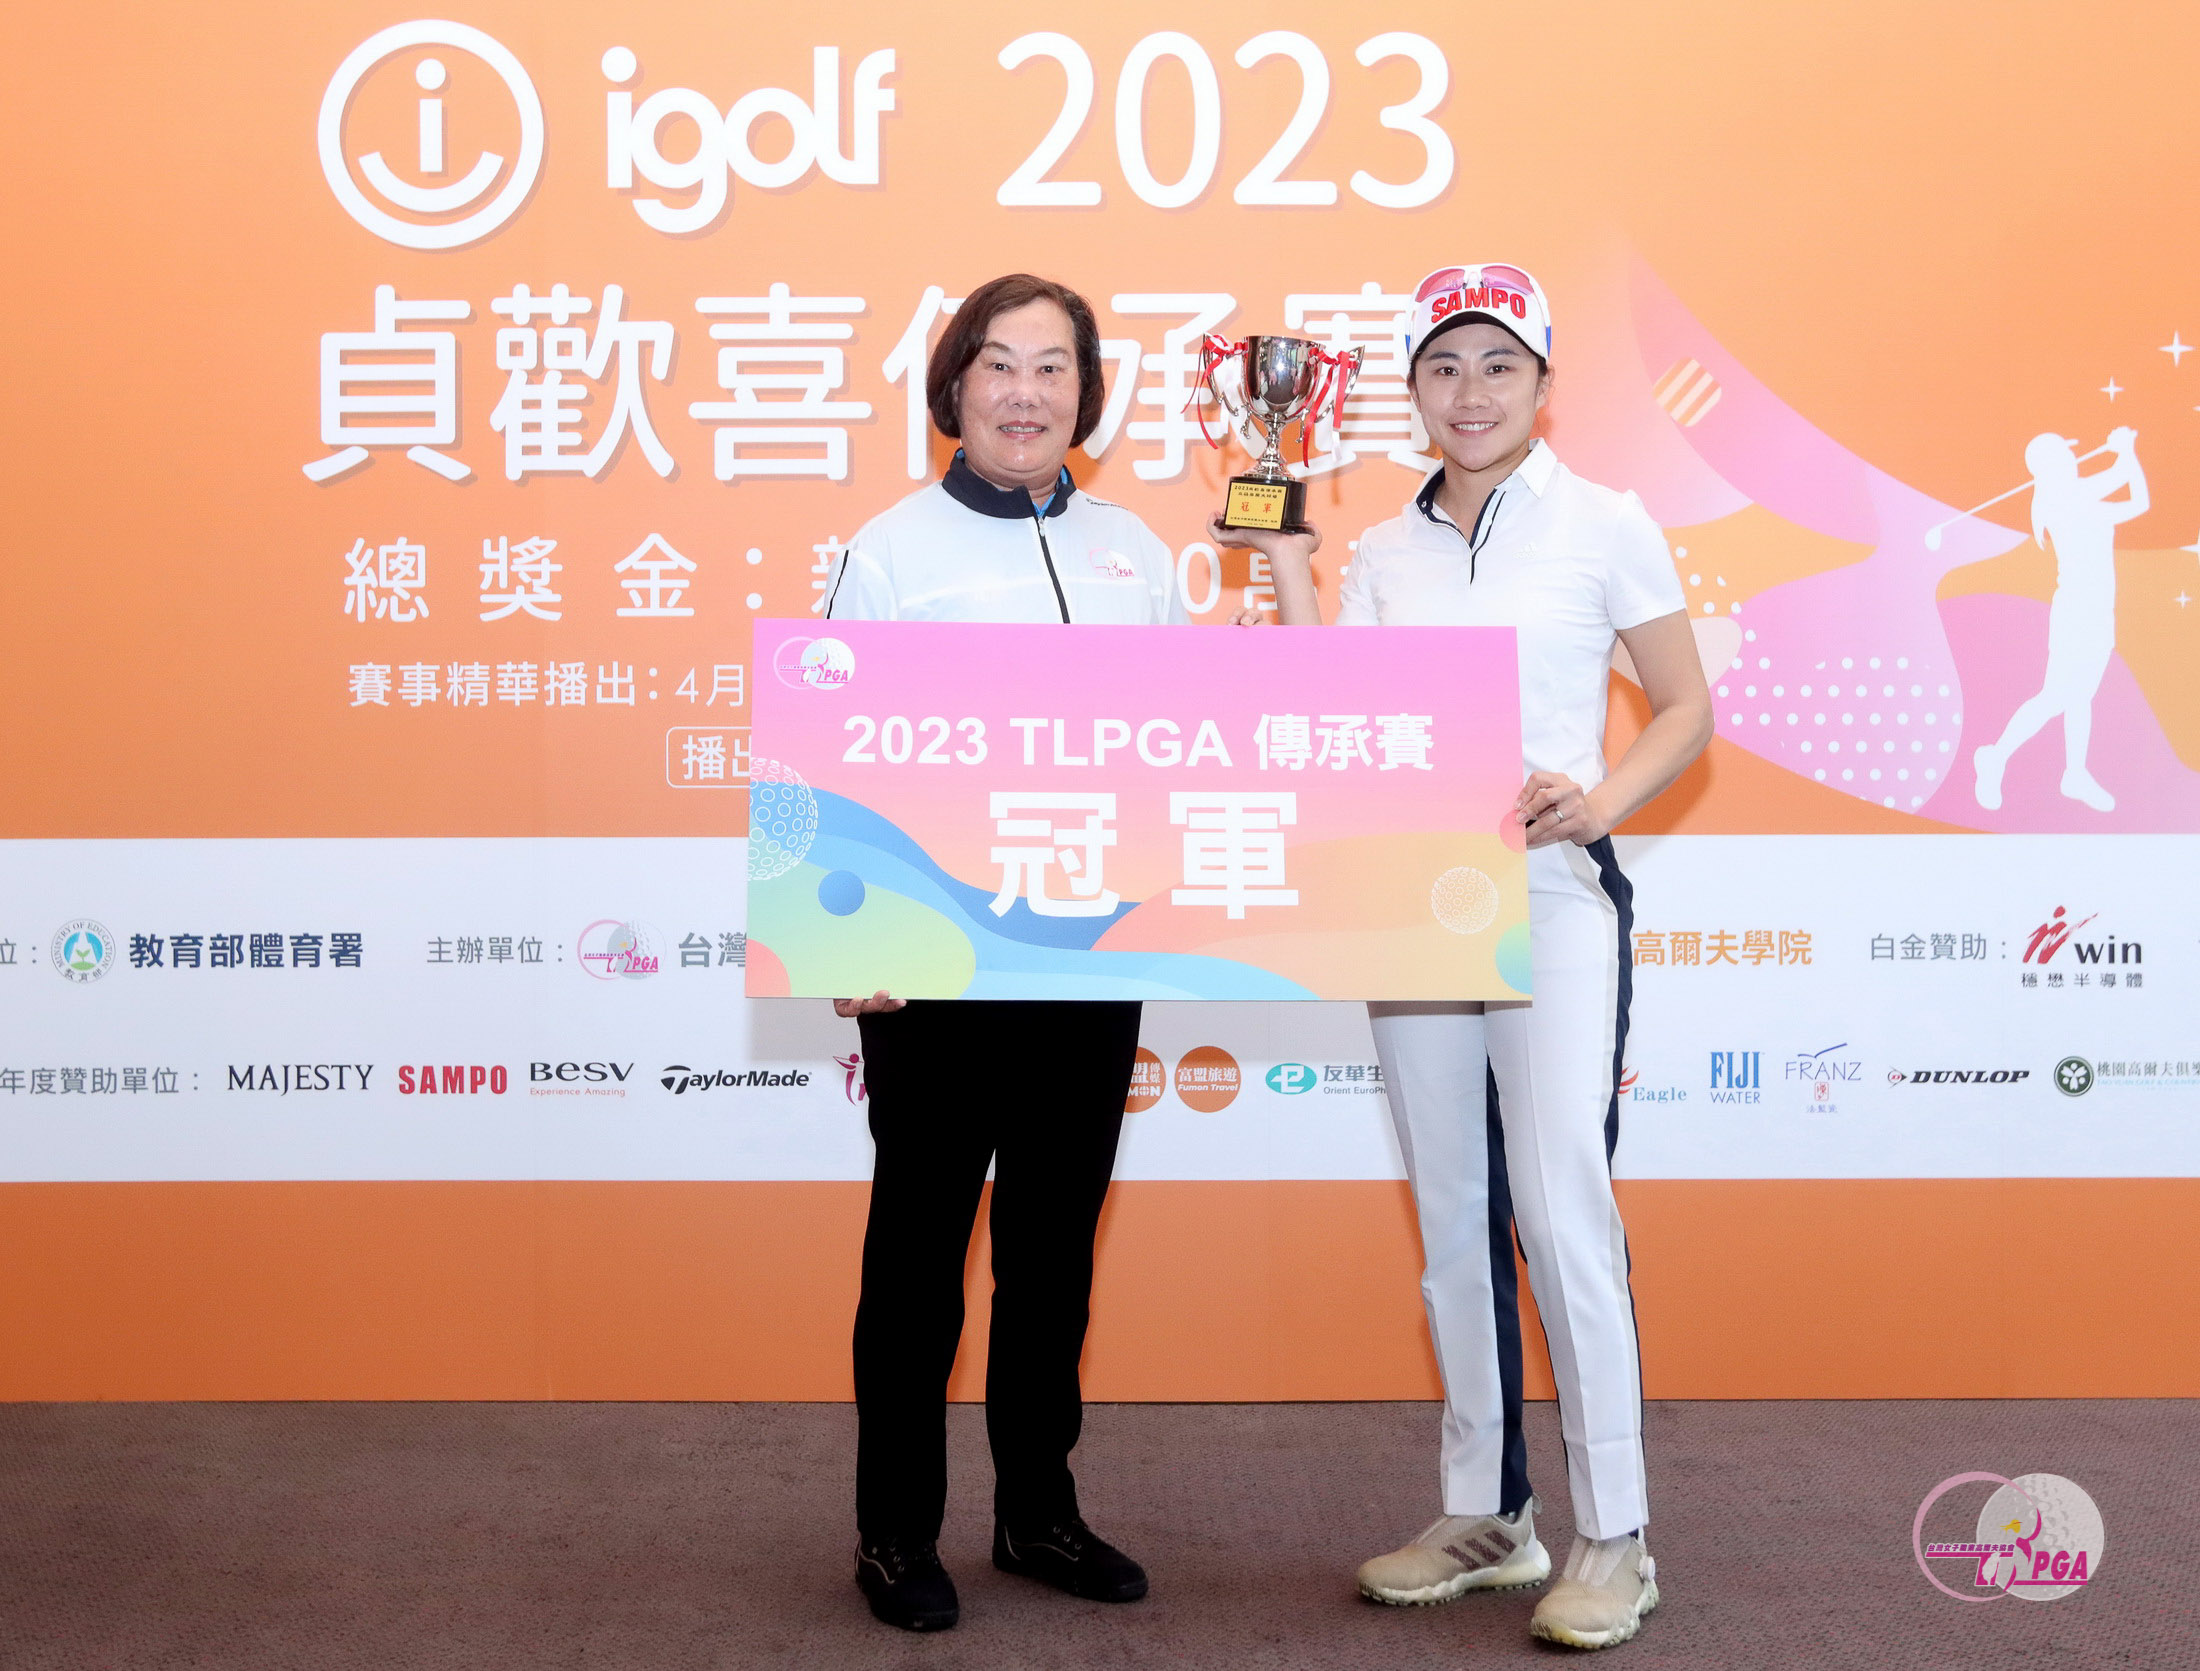 台灣女子職業高爾夫協會理事長劉依貞(左)頒冠軍盃給張瑄屏。鍾豐榮攝影